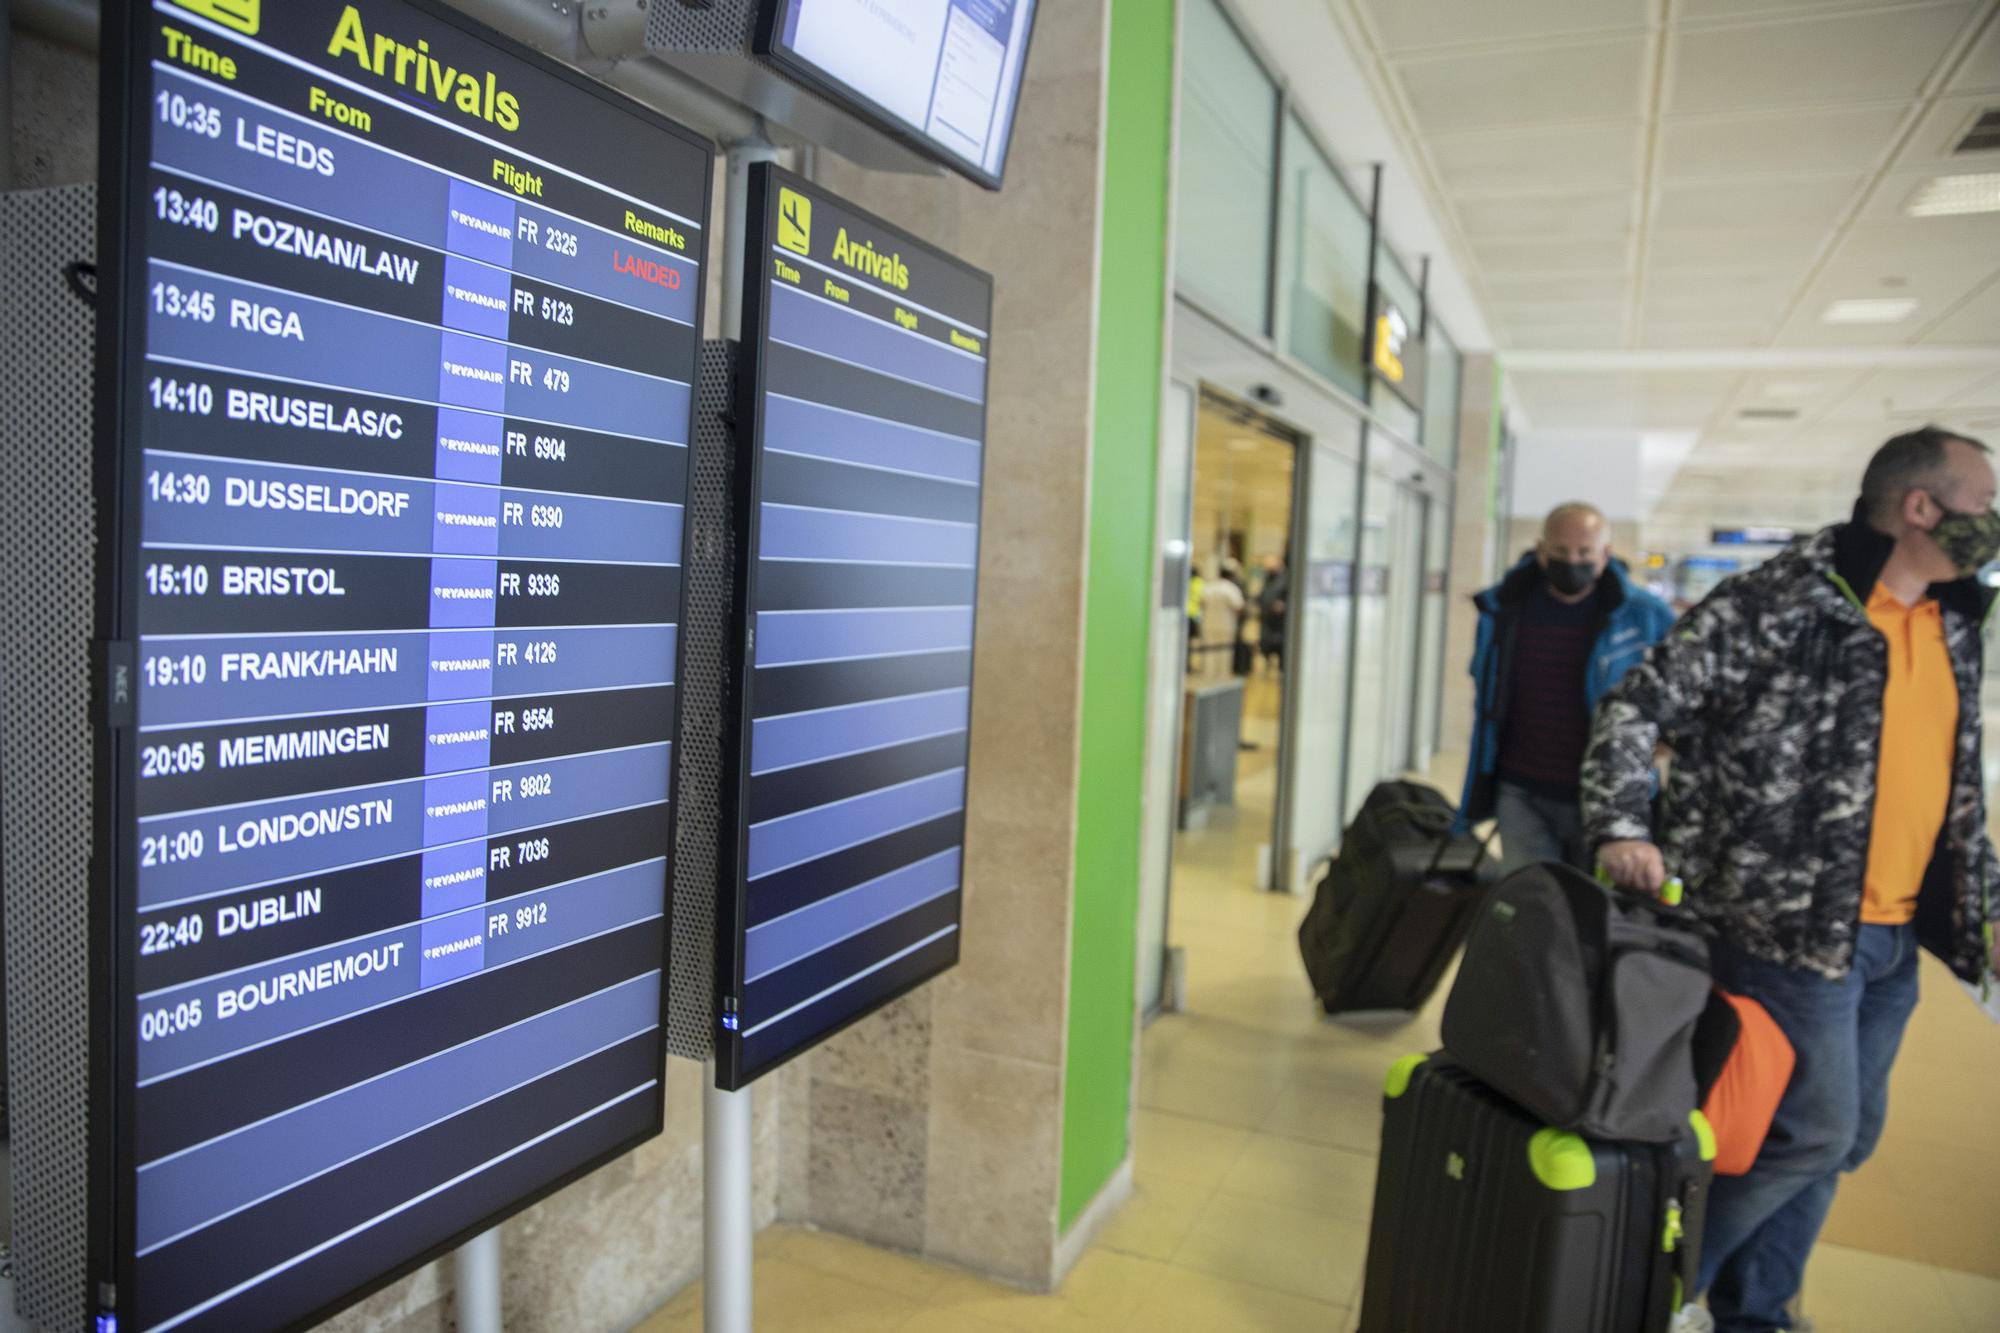 «Volar a Girona és, a part d’econòmic, molt més pràctic»